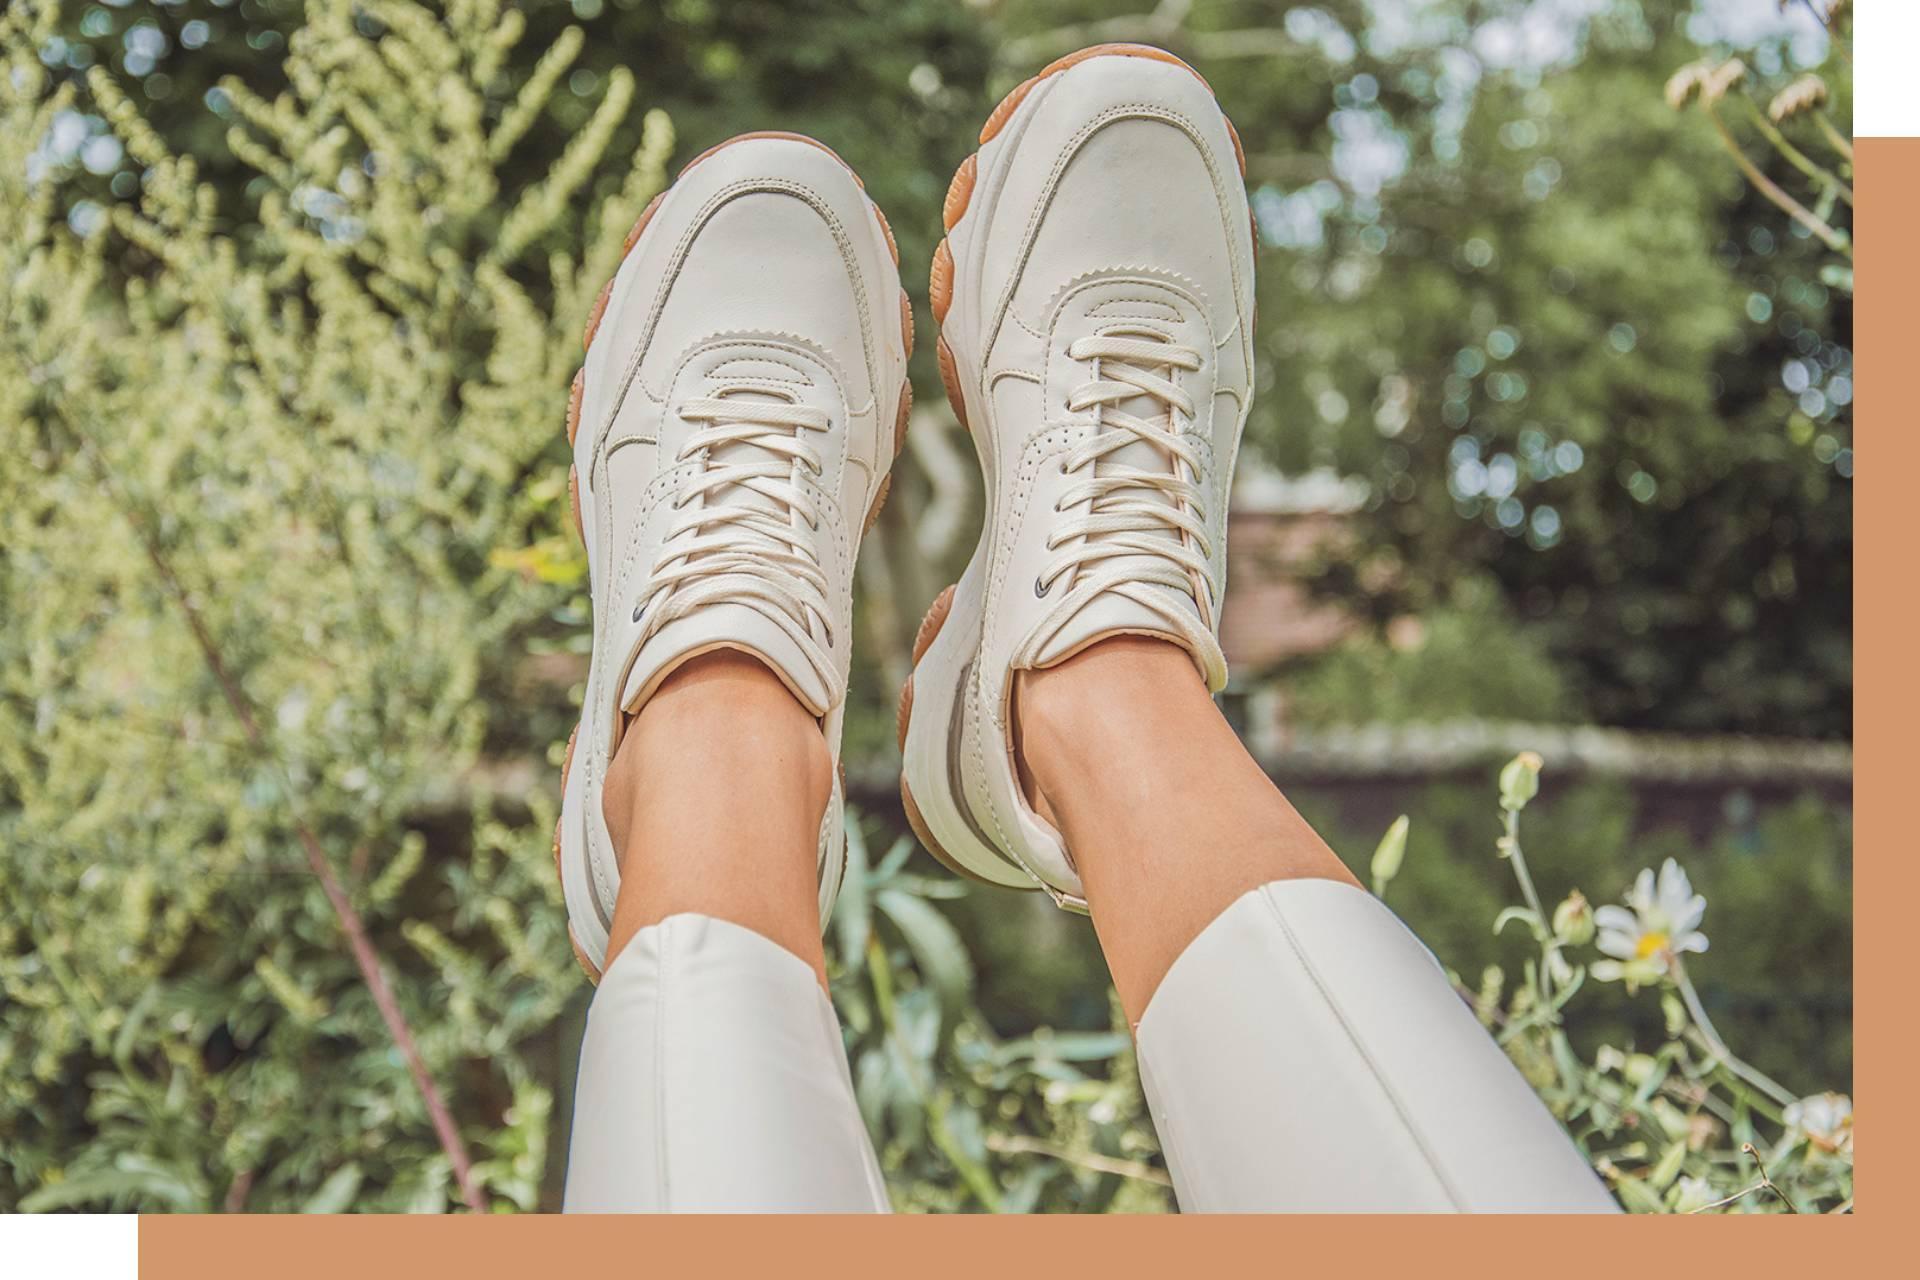 haai Lucht Recreatie Smalle voeten: de beste schoenmerken voor jou | SHUZ Blog